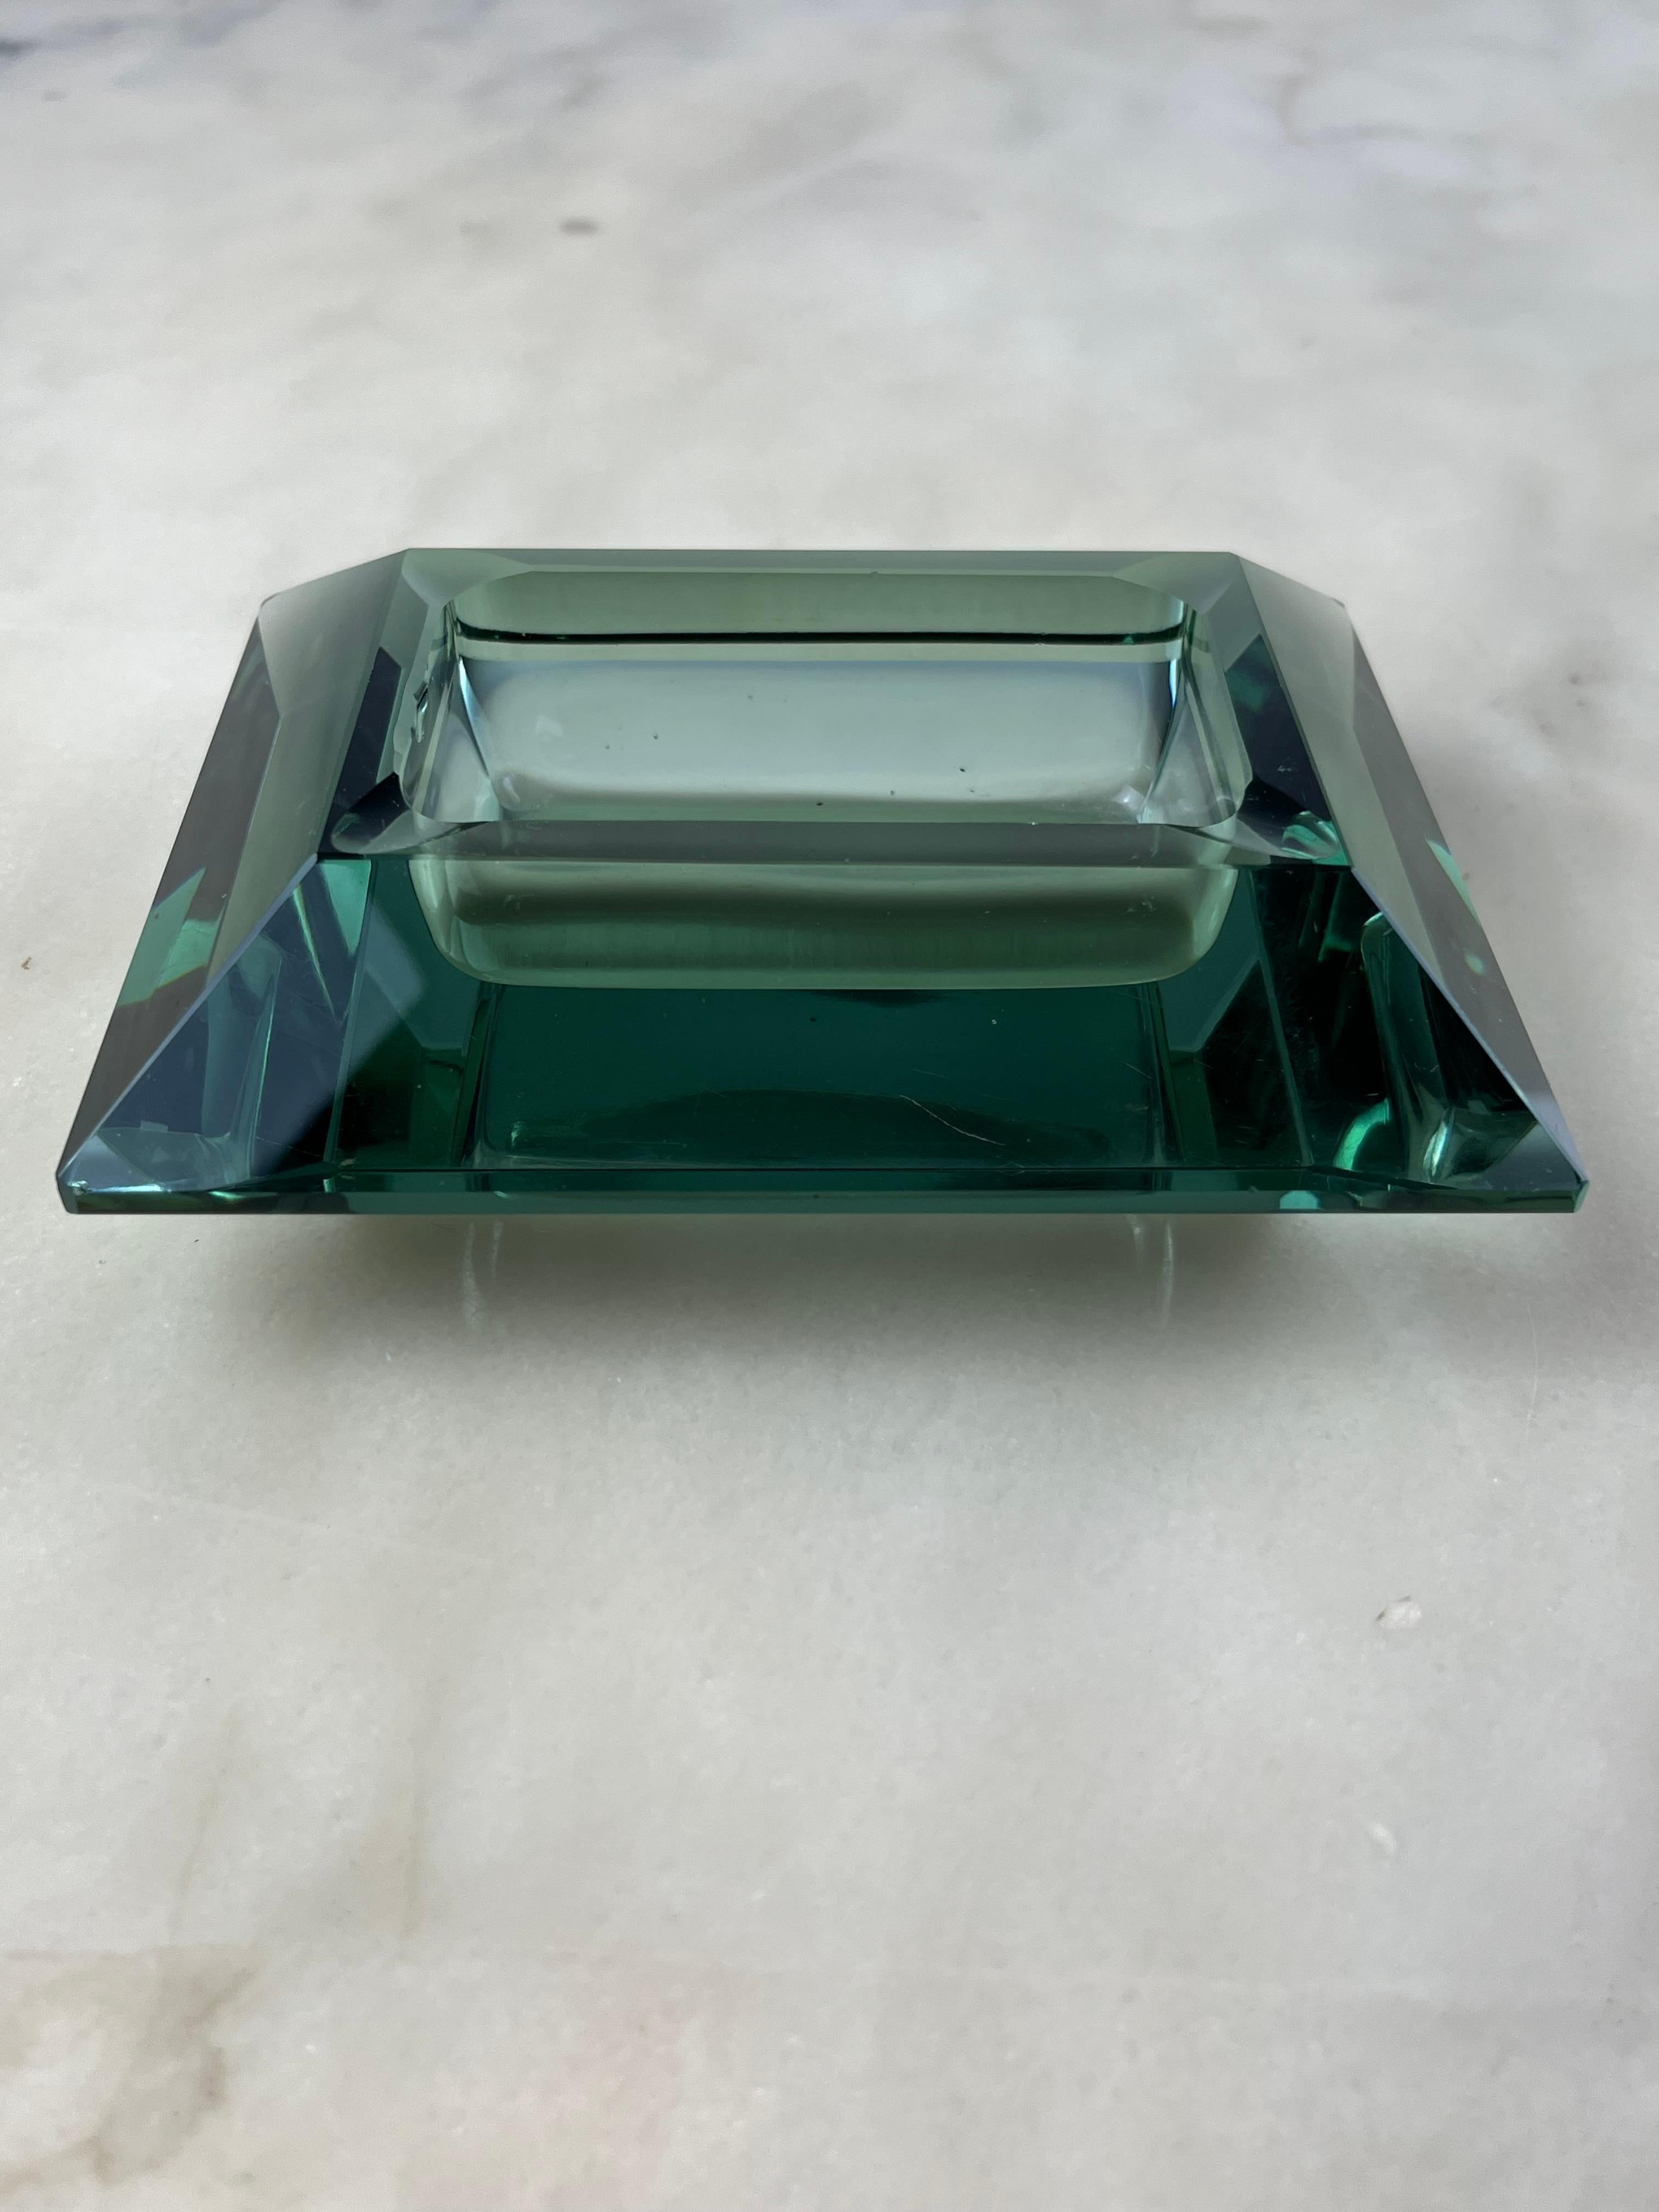 Murano-Glas Aschenbecher/Valet-Tablett, Italien, 1970er Jahre
Nile grüne Farbe, kleine Chips, die nicht seine Schönheit beeinträchtigen. Gegenstand der Familie.